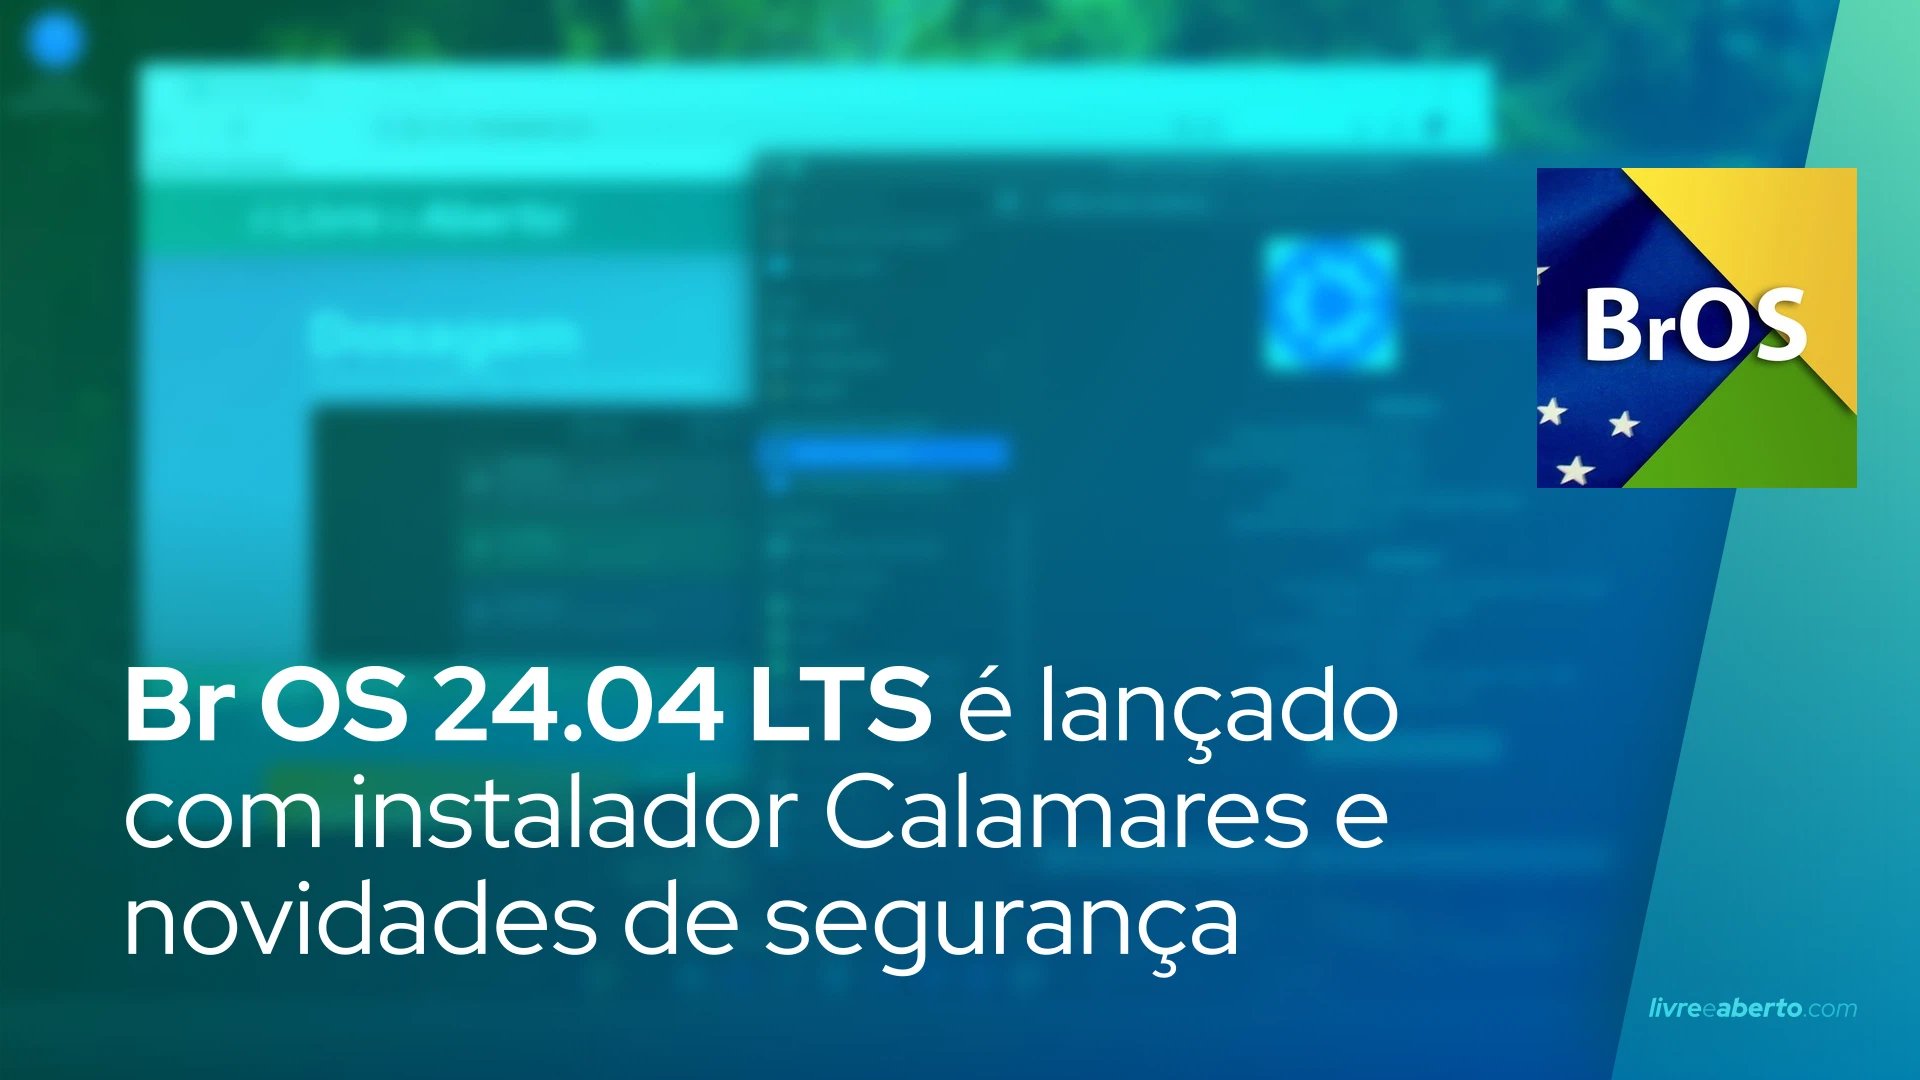 Br OS 24.04 LTS é lançado com instalador Calamares e novidades de segurança